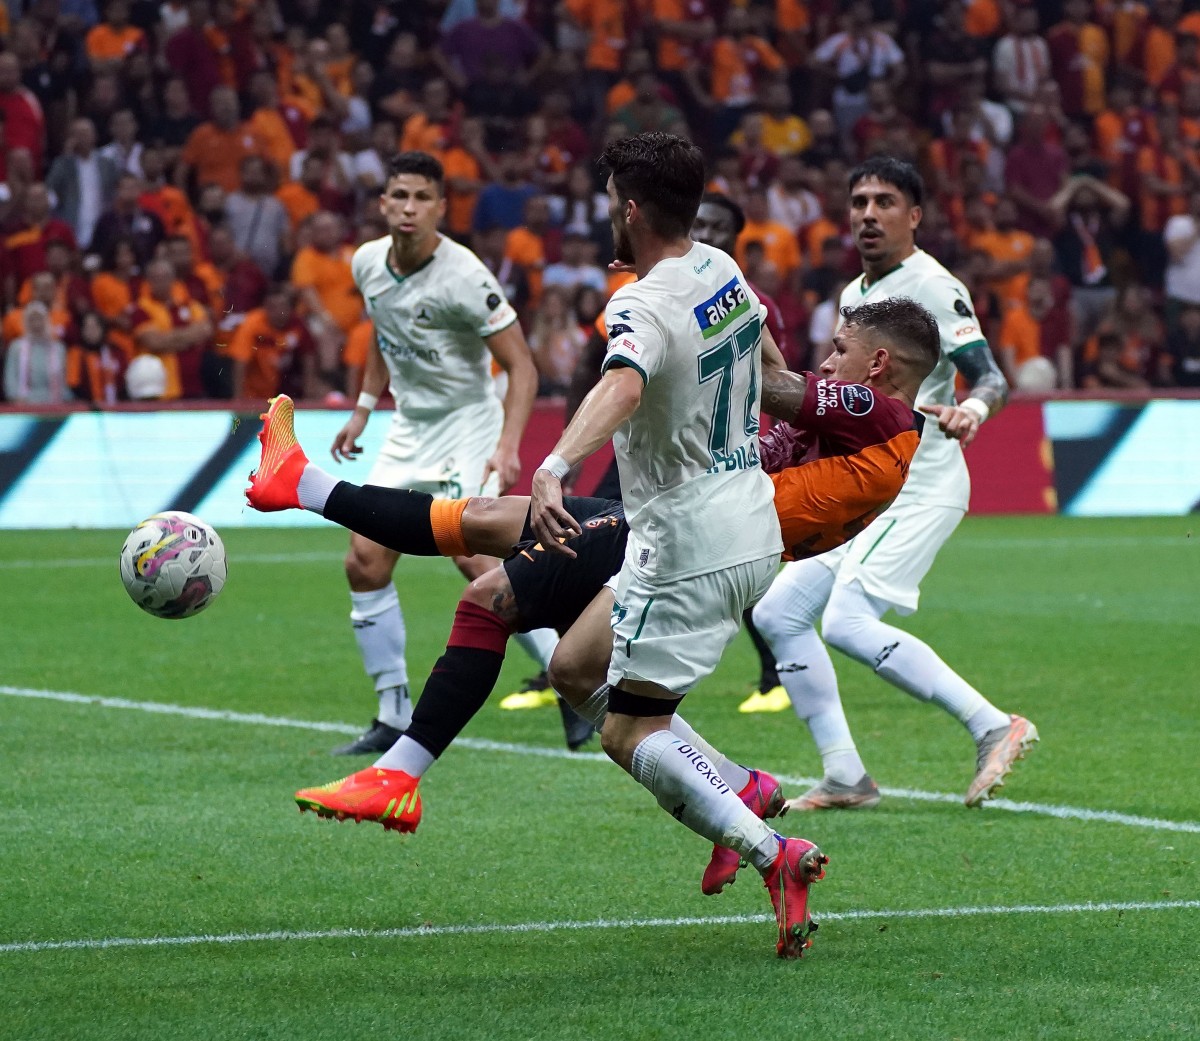 Galatasaray - Giresunspor maçını 45 bin 484 taraftar izledi